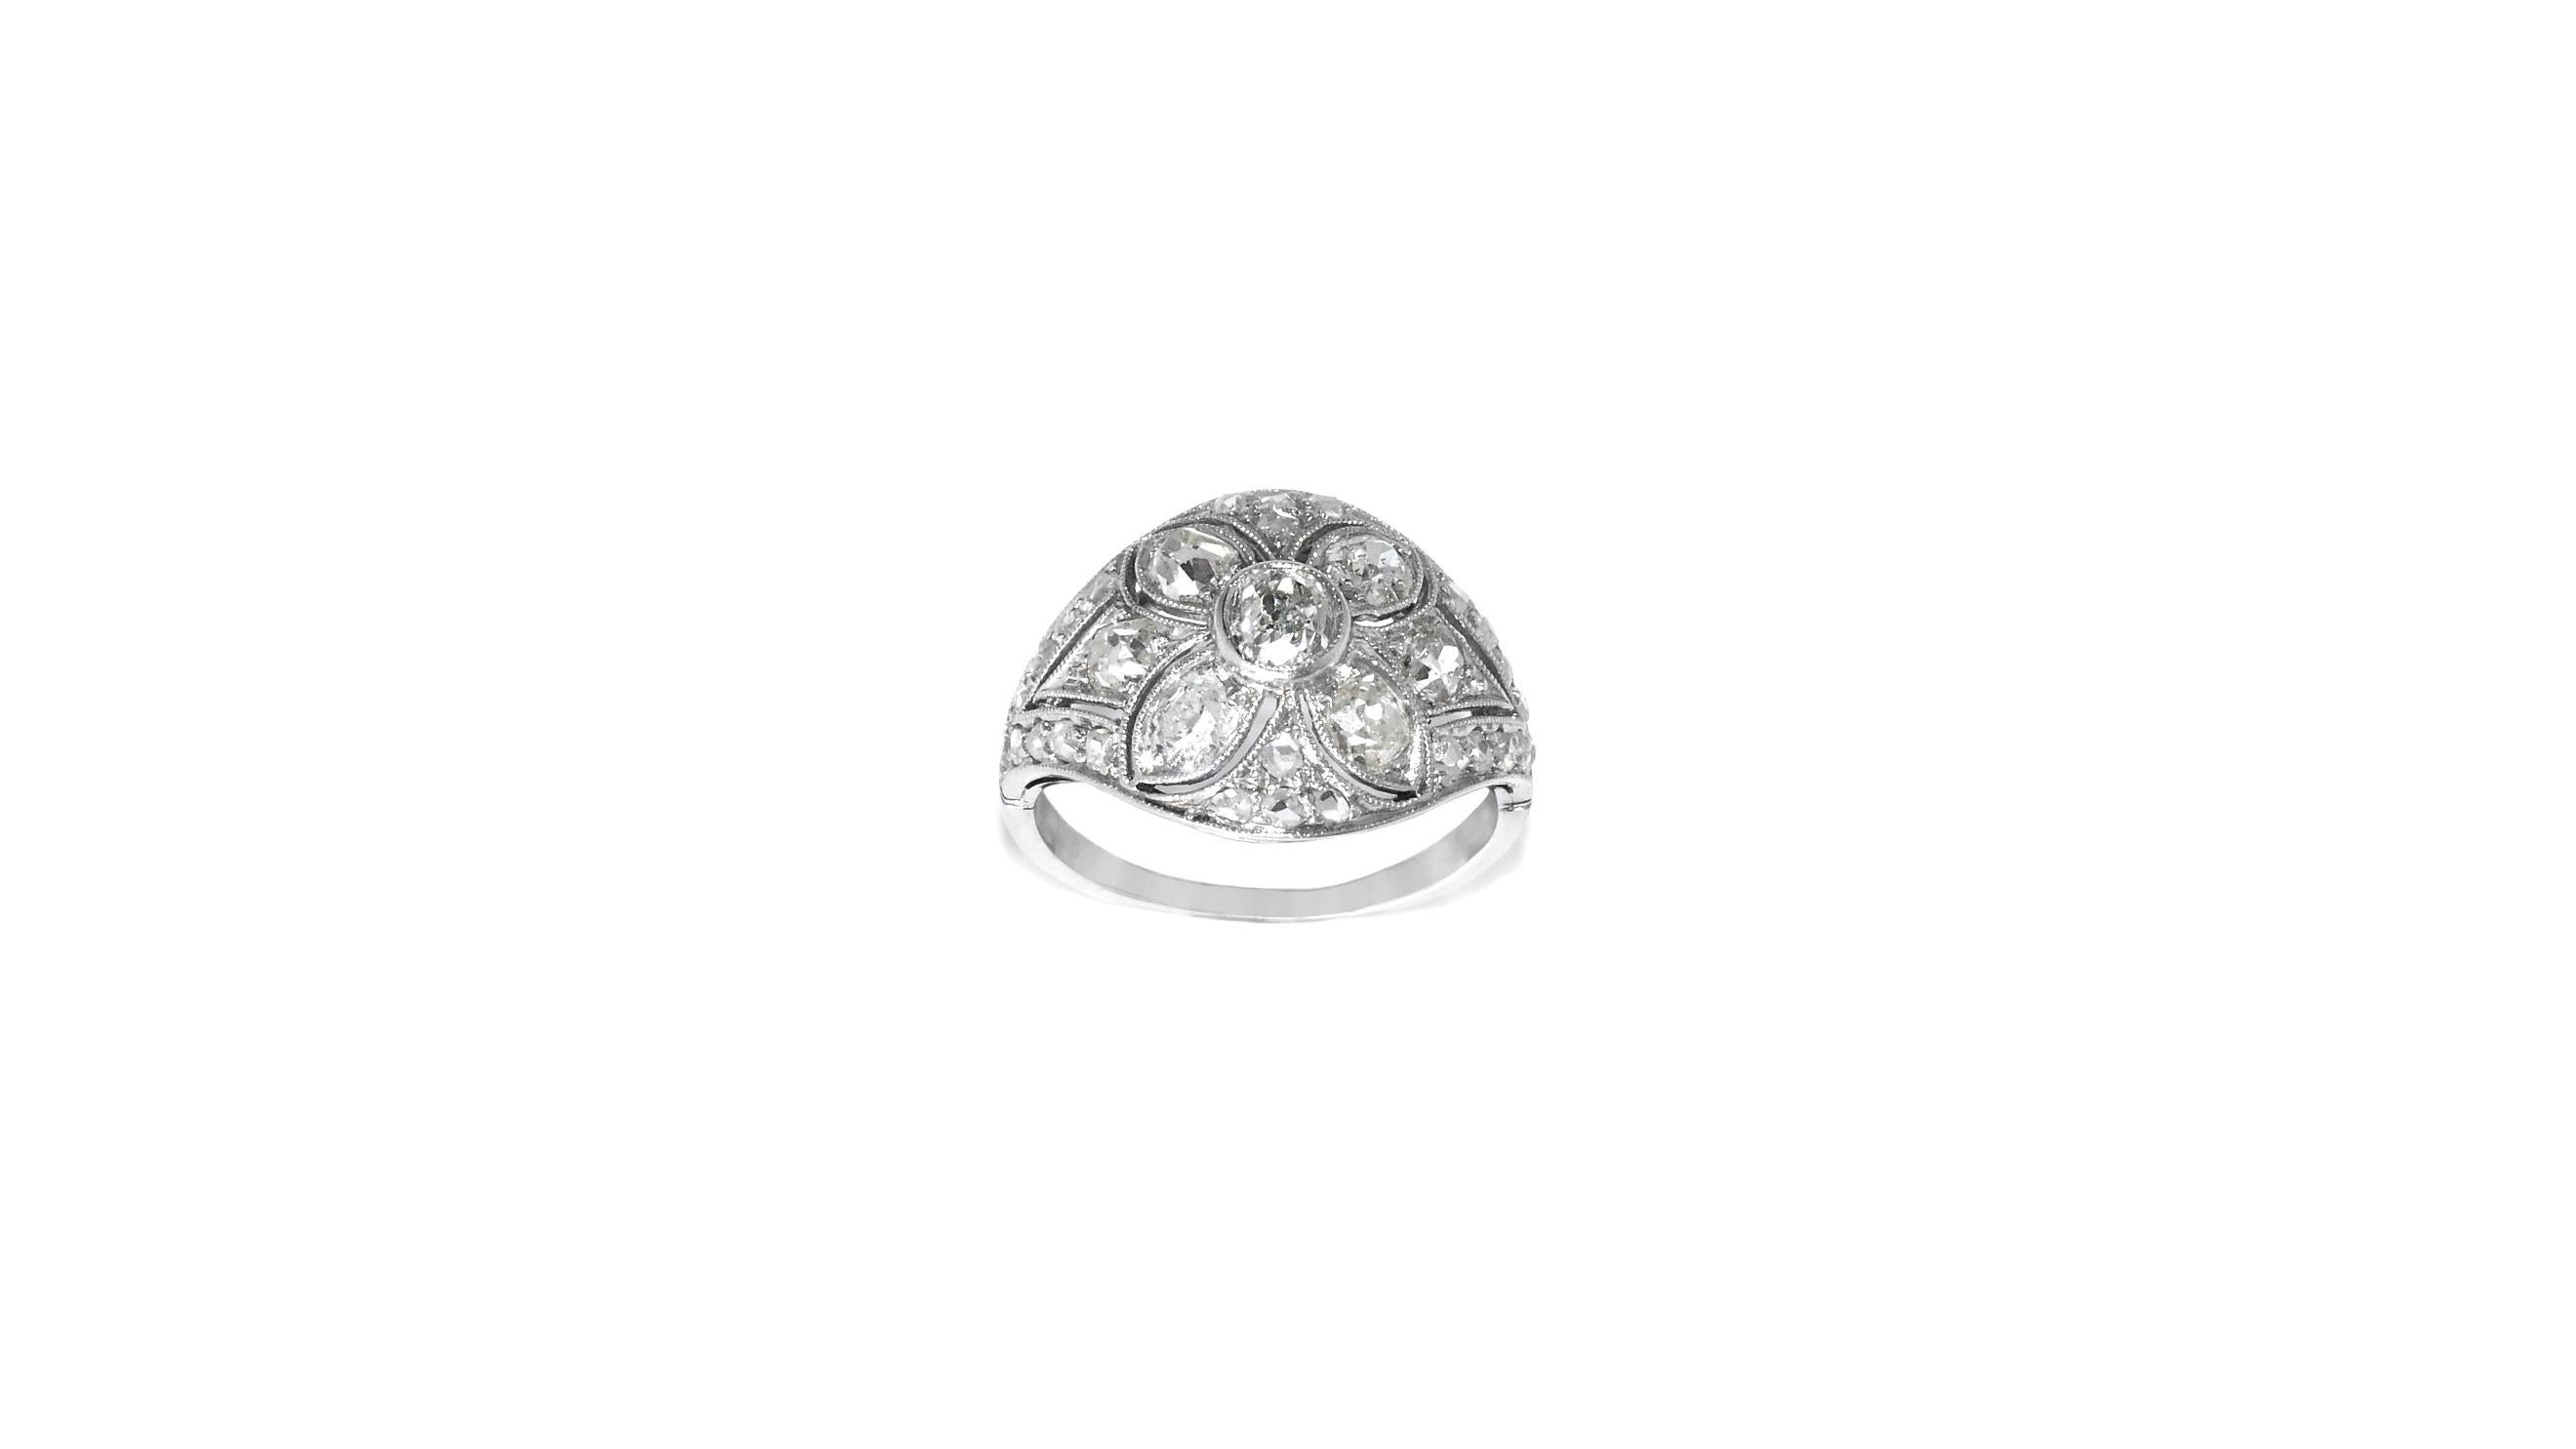 Art Deco Period Diamond Ring circa 1930 Set in Platinum and 18 Carat White Gold Damen